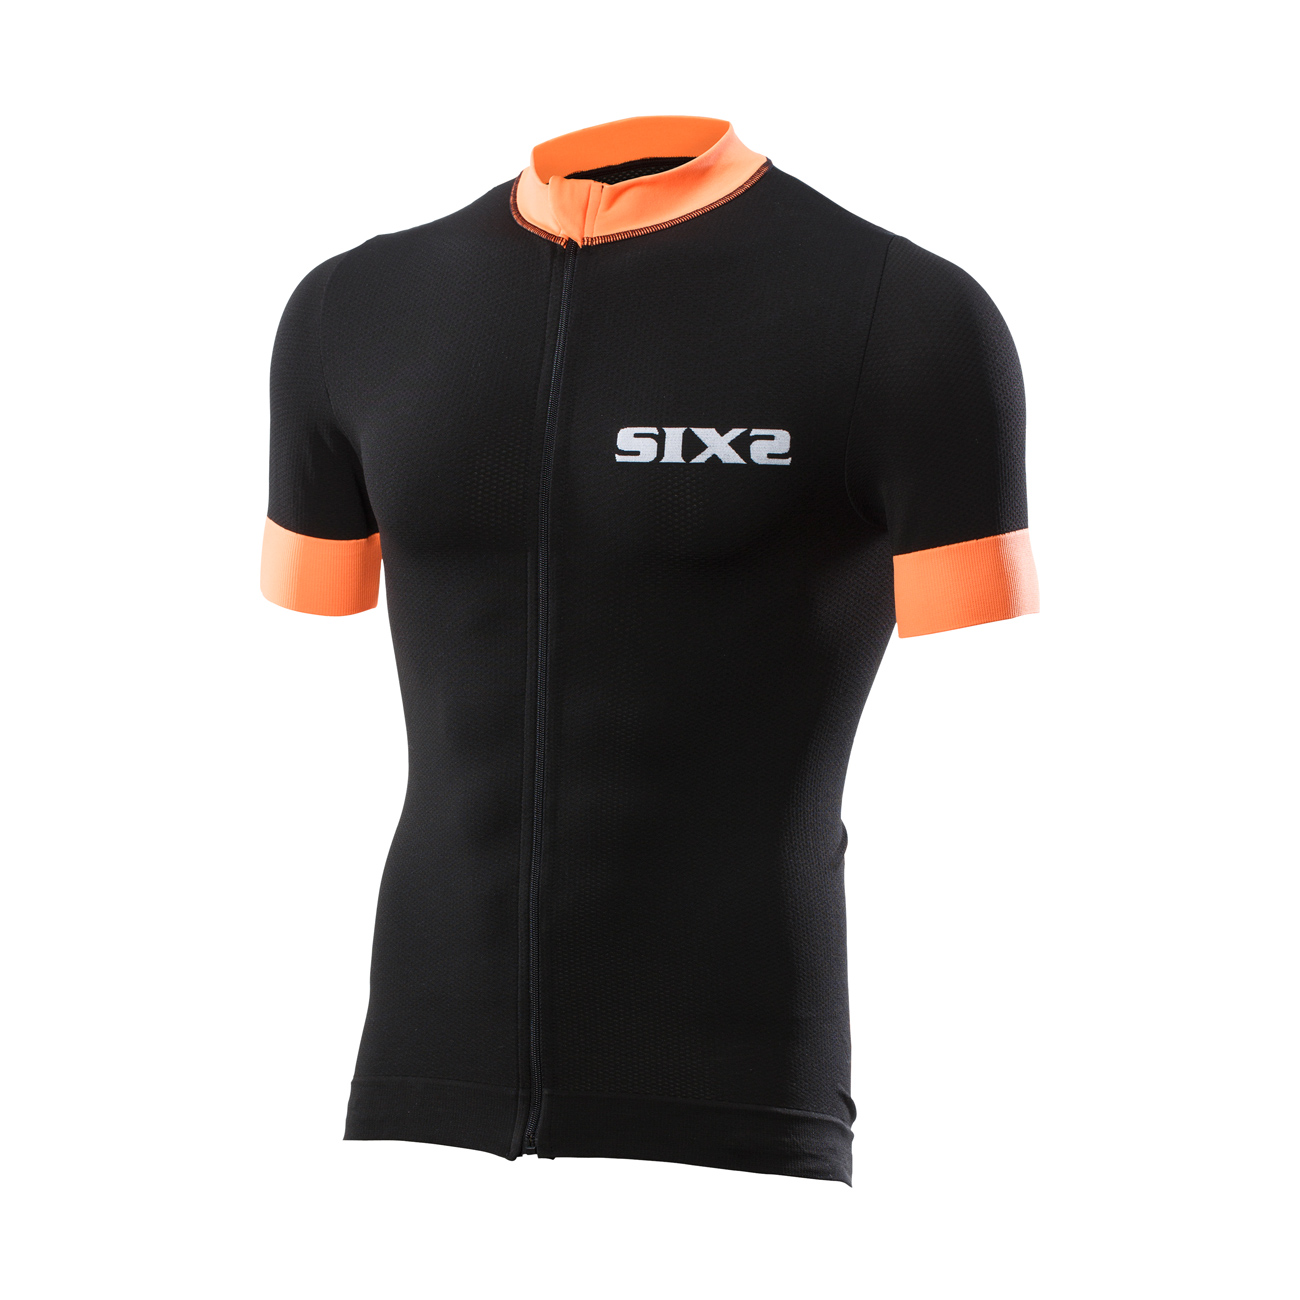 SIX2 Koszulka Kolarska Z Krótkim Rękawem - BIKE3 STRIPES - Czarny/pomarańczowy